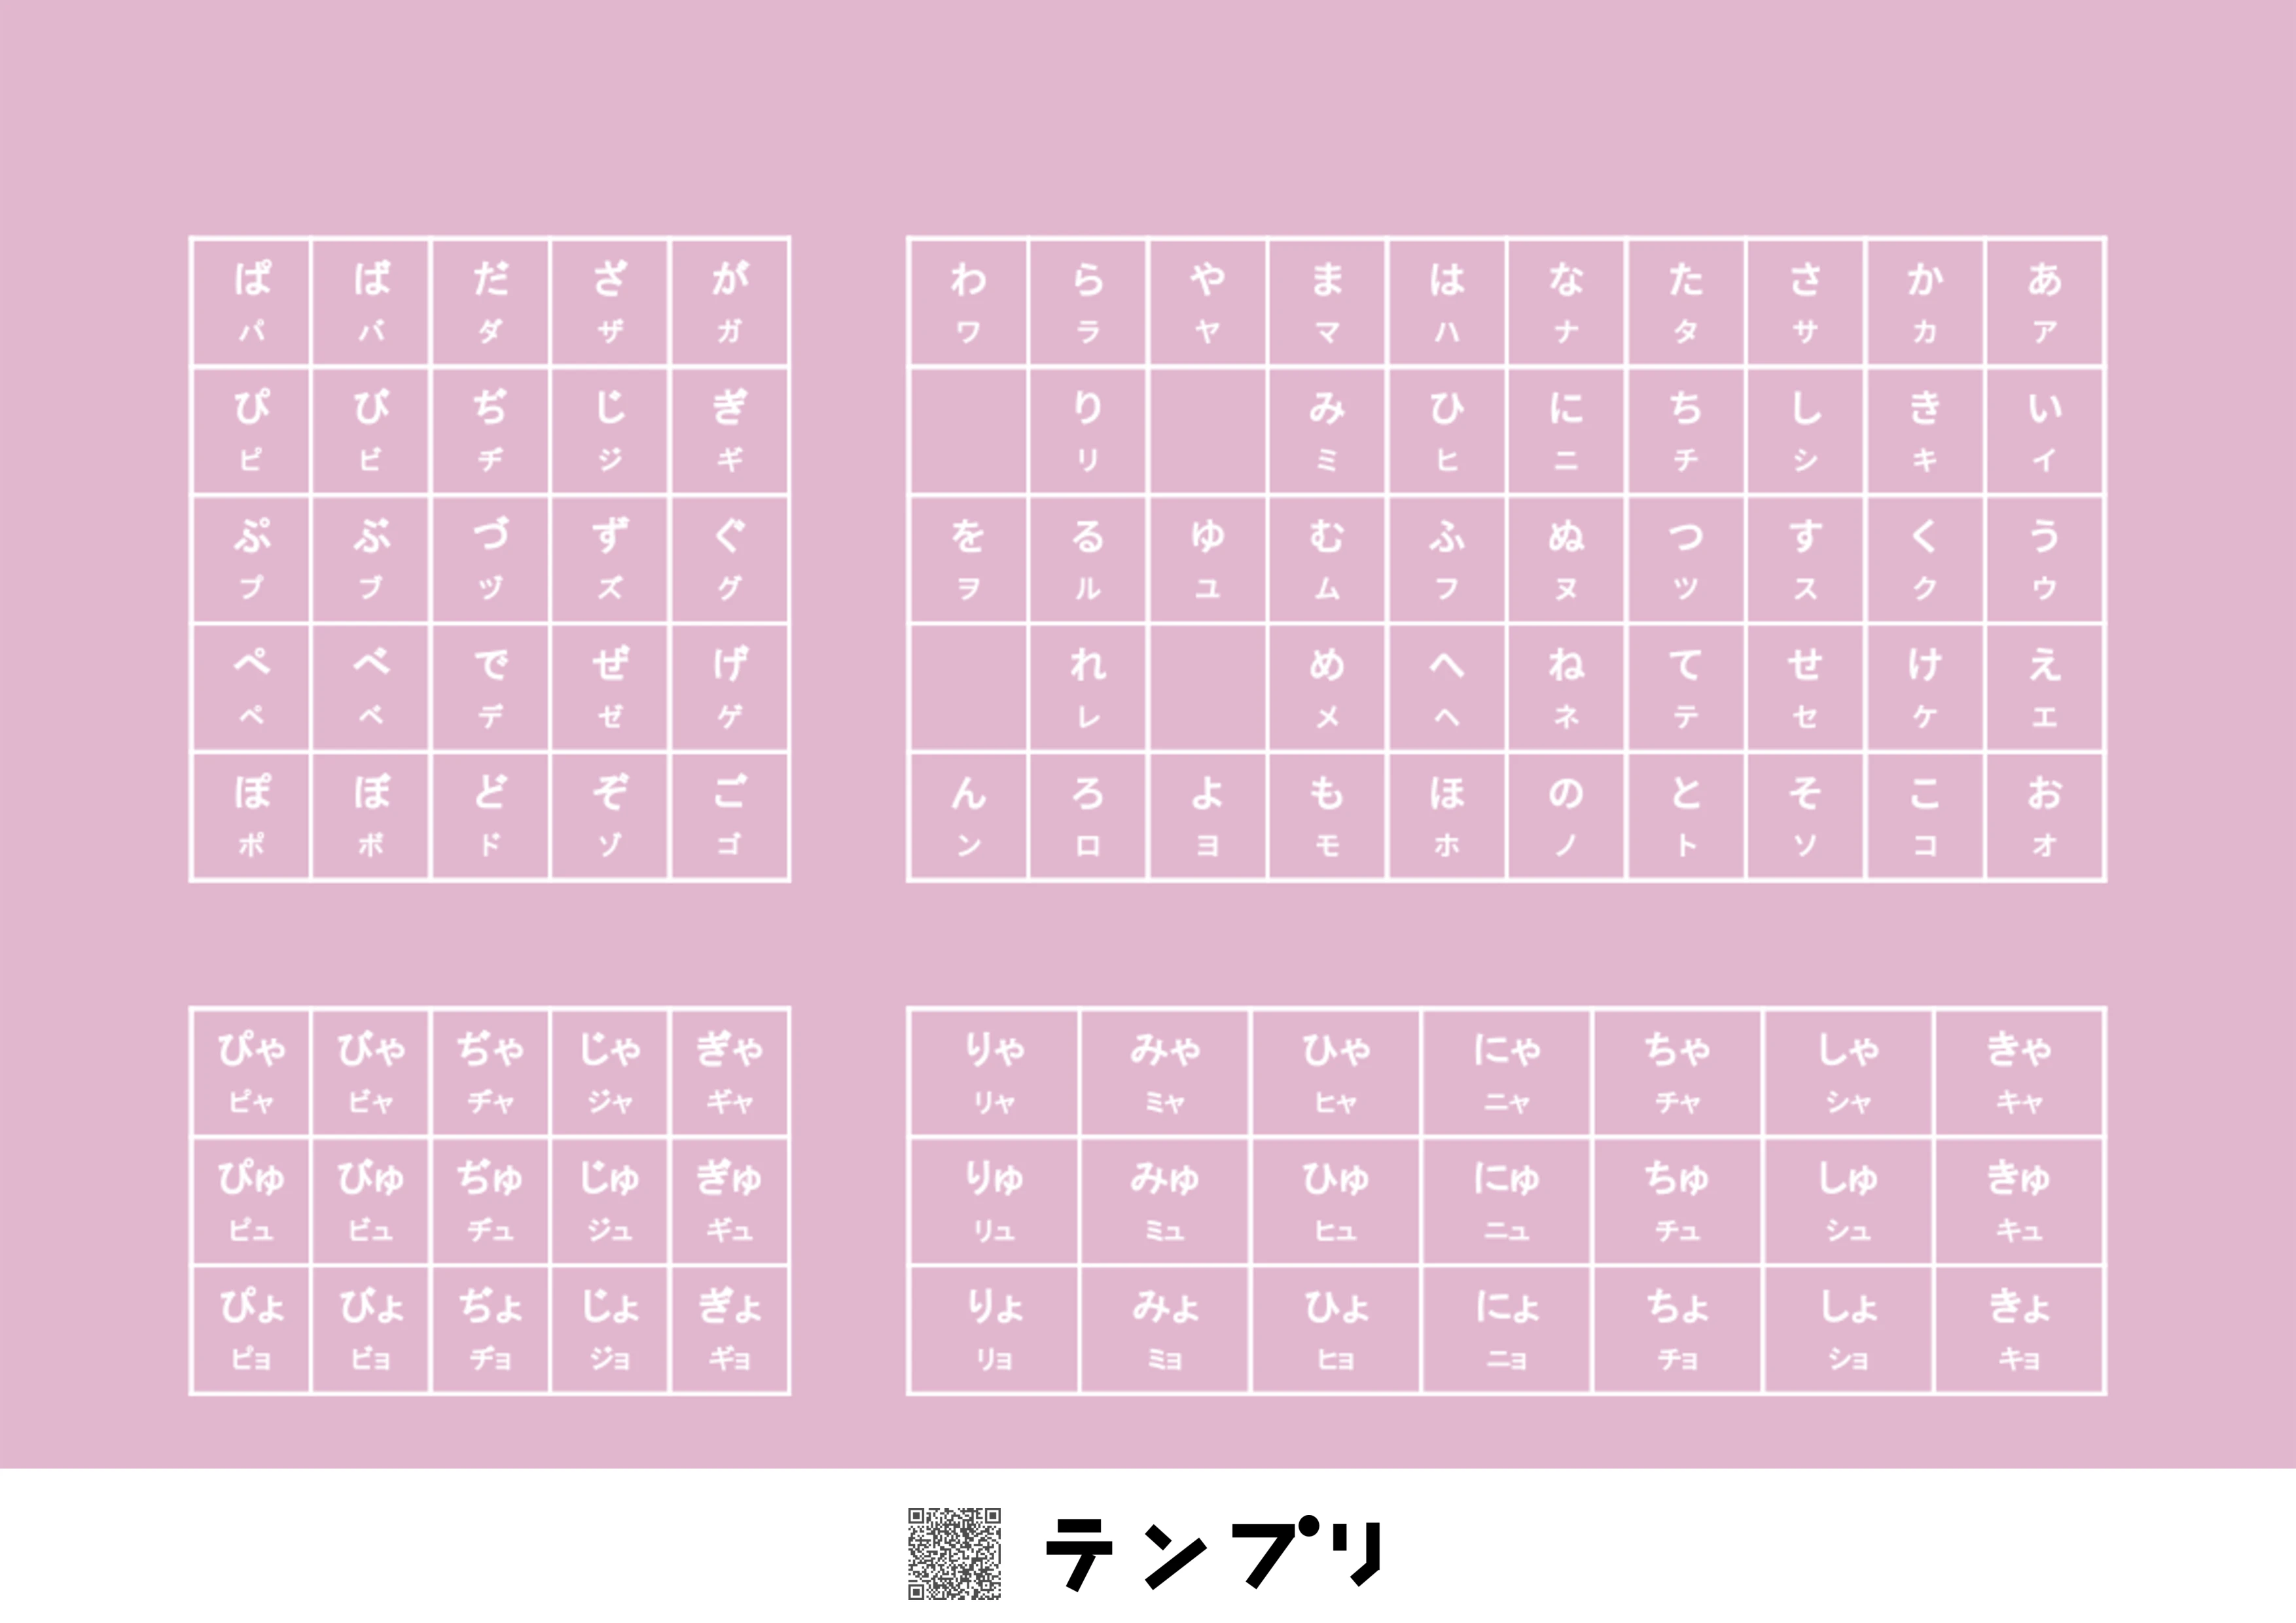 無料で印刷できるひらがな表(カタカナ付)-ピンクのプリントです。